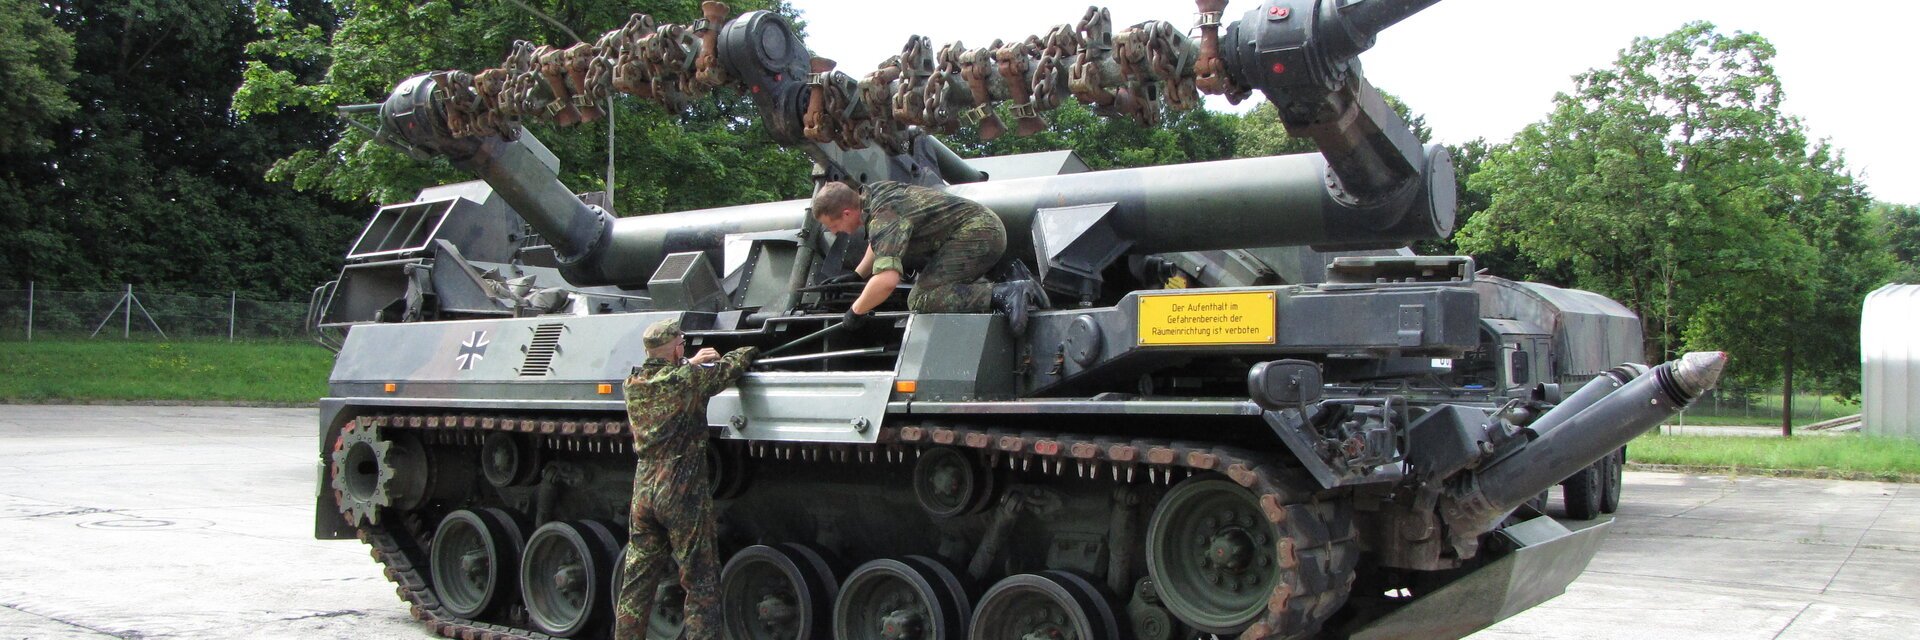 Soldaten der Instandhaltung Ã¼berprÃ¼fen das Bordwerkzeug eines Panzers